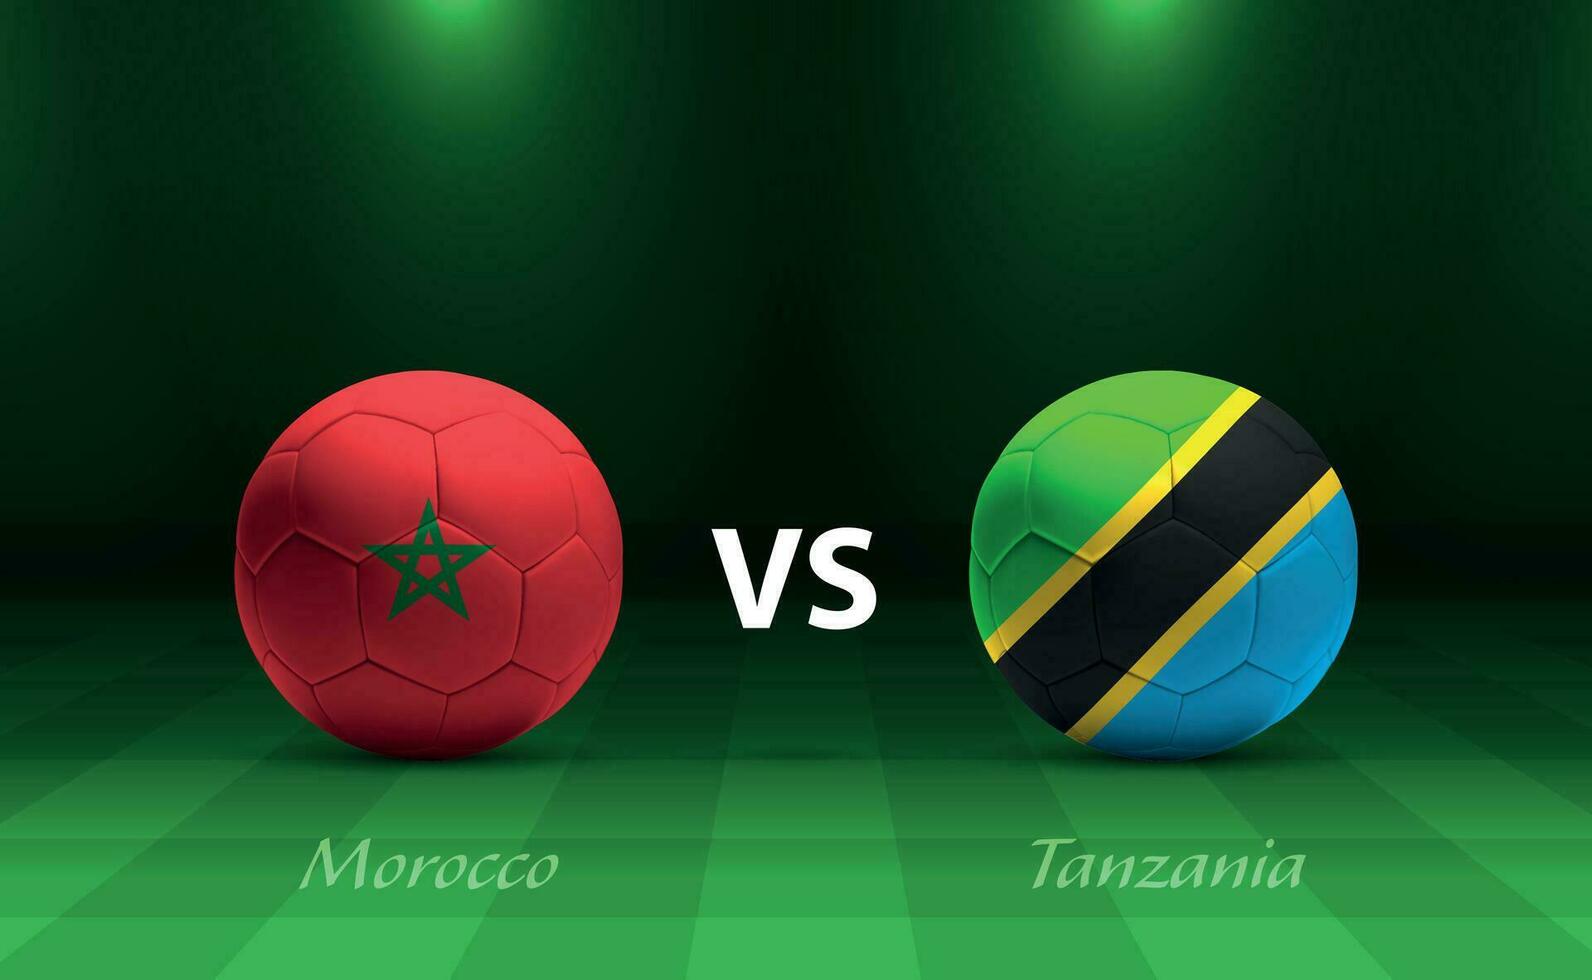 Marocco vs Tanzania calcio tabellone segnapunti trasmissione modello vettore